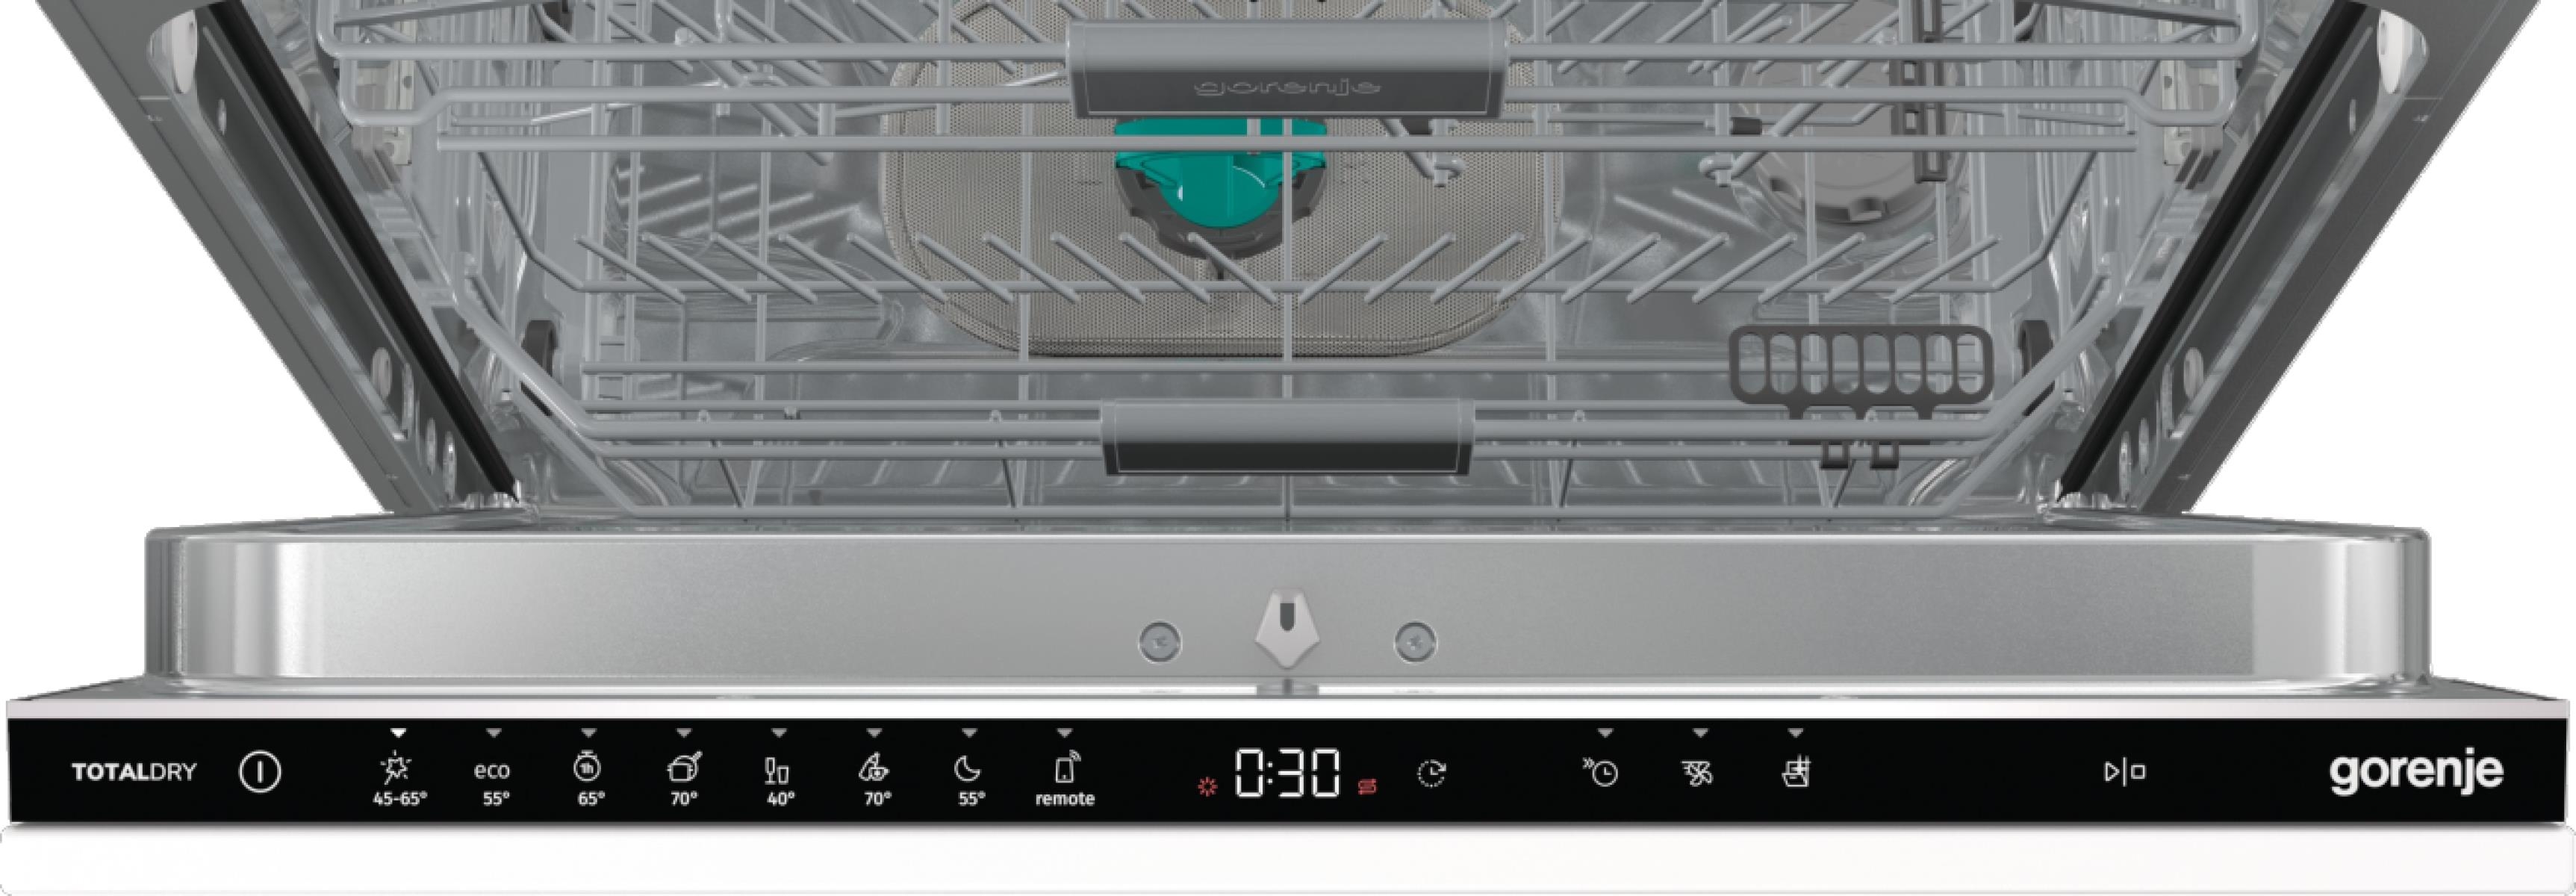 Посудомоечная машина Gorenje GV673C60 инструкция - изображение 6